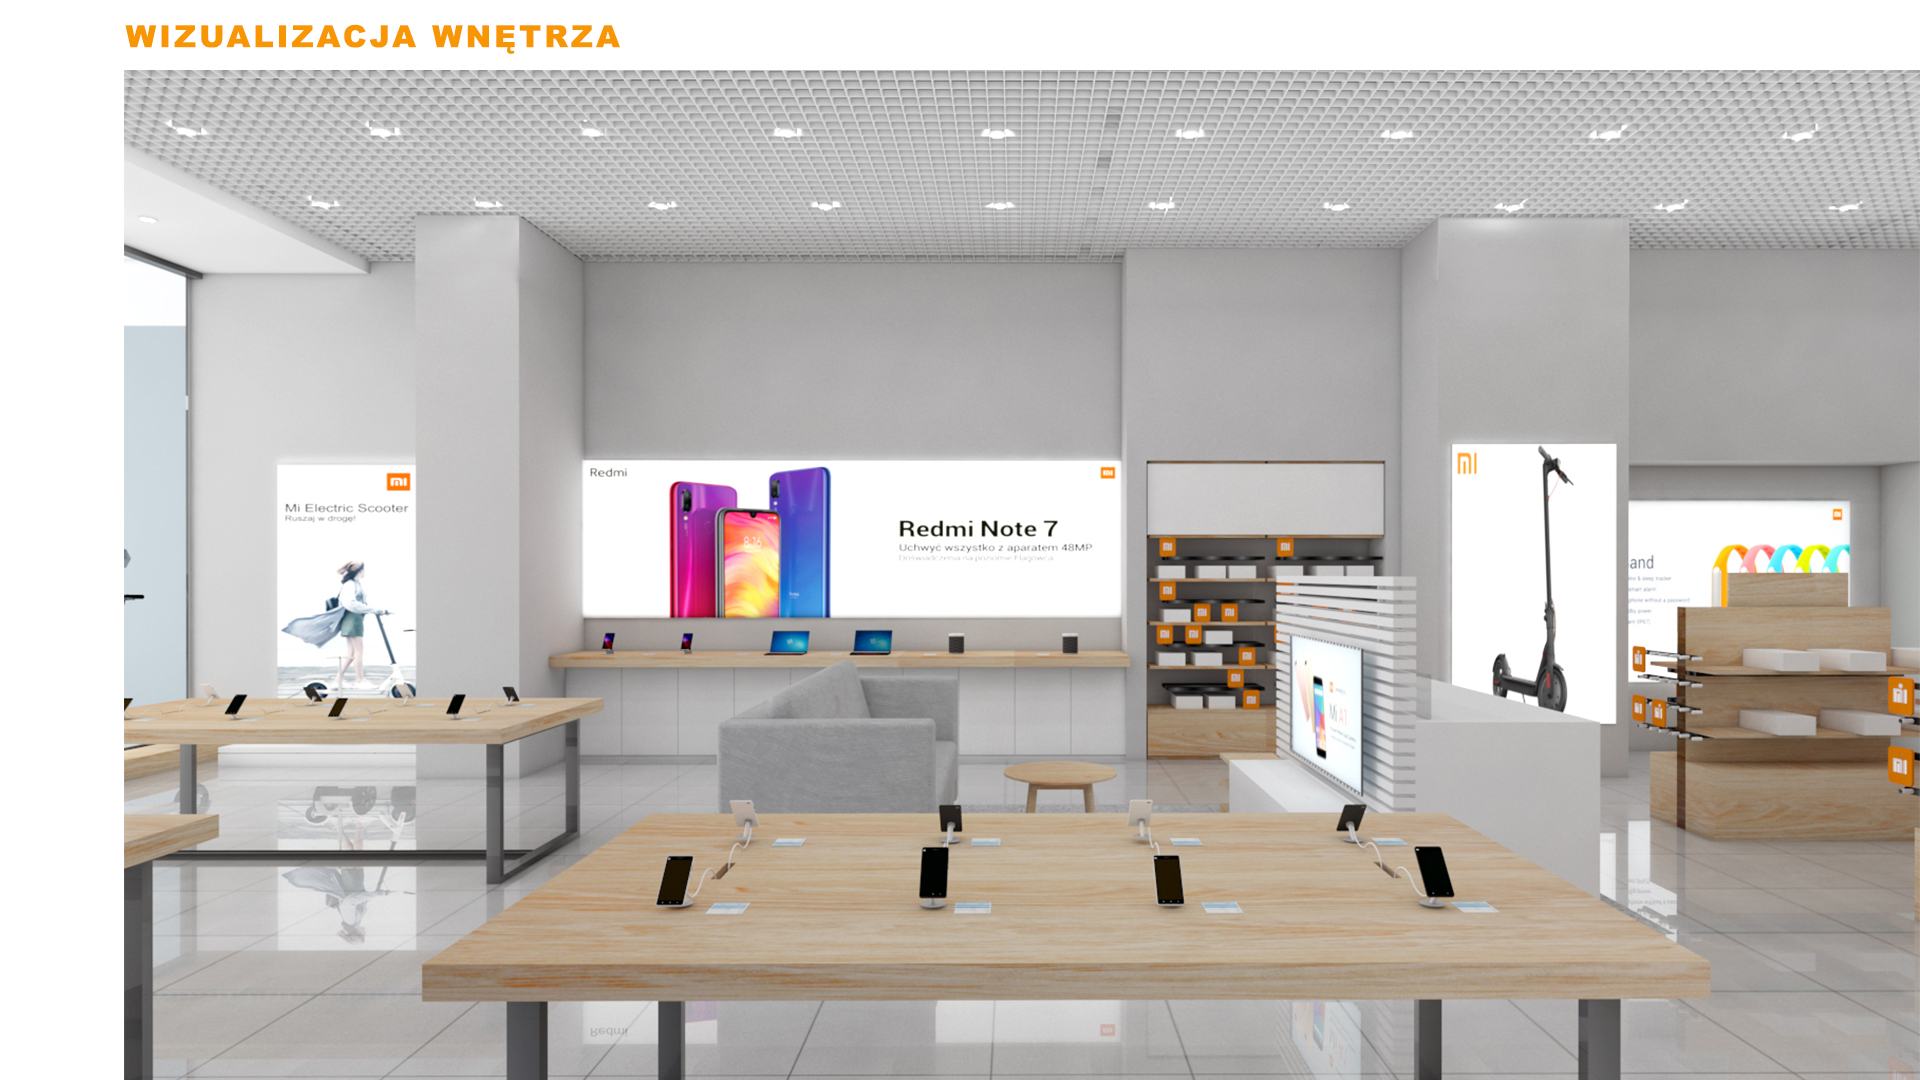 Mi-Store - Warszawa - Galeria Młociny - wizualizacja wnętrza